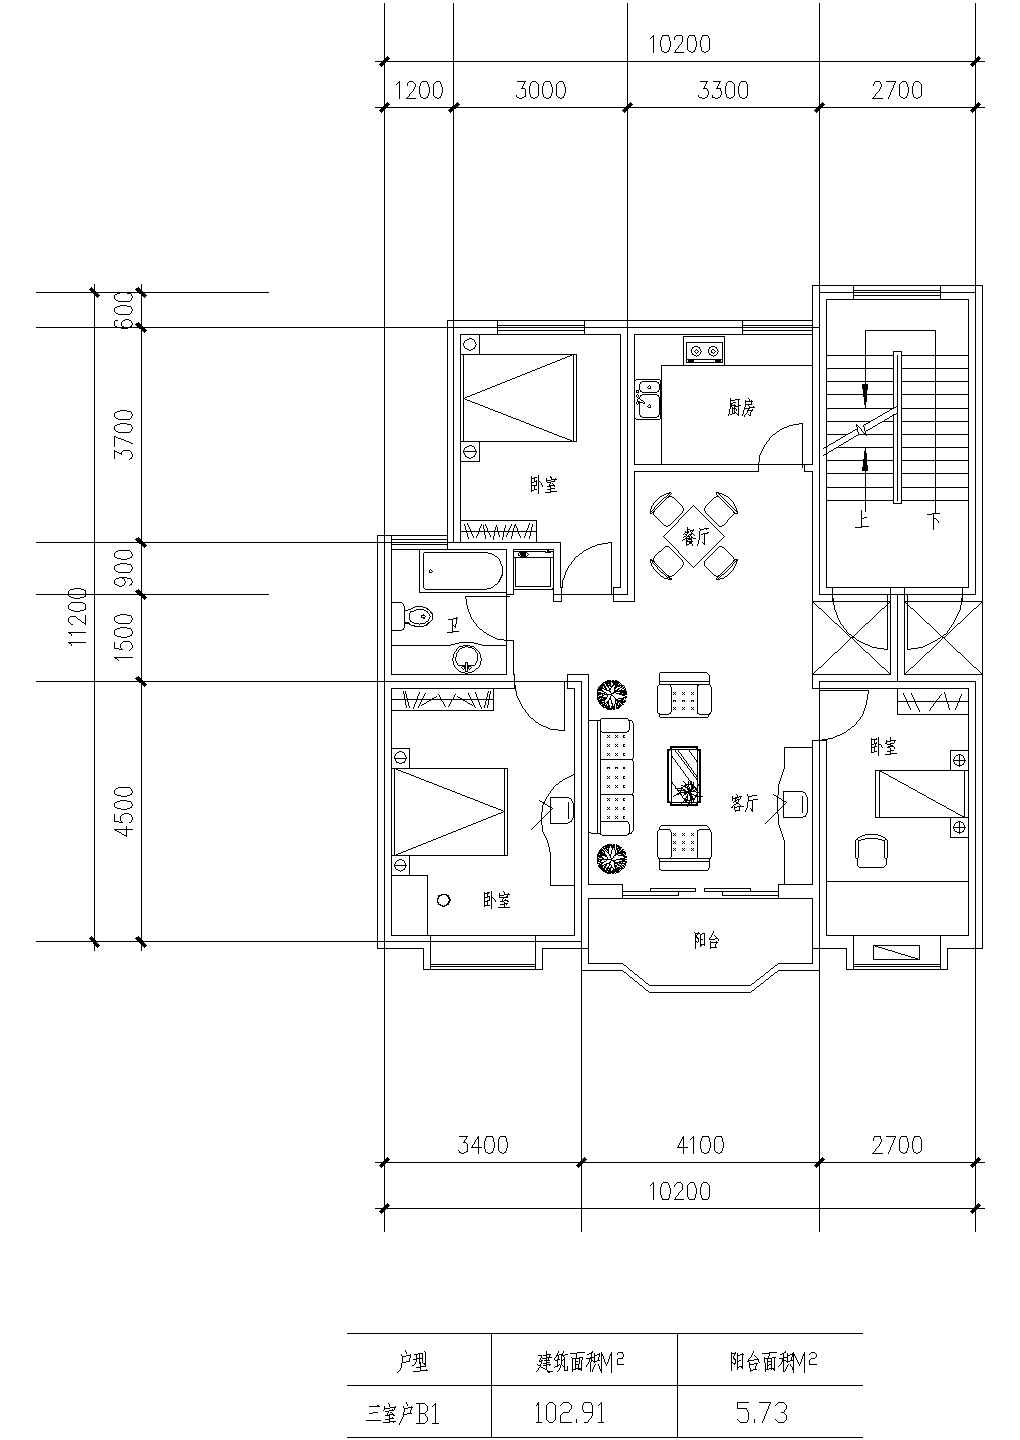 板式高层三室一厅单户户型设计CAD图